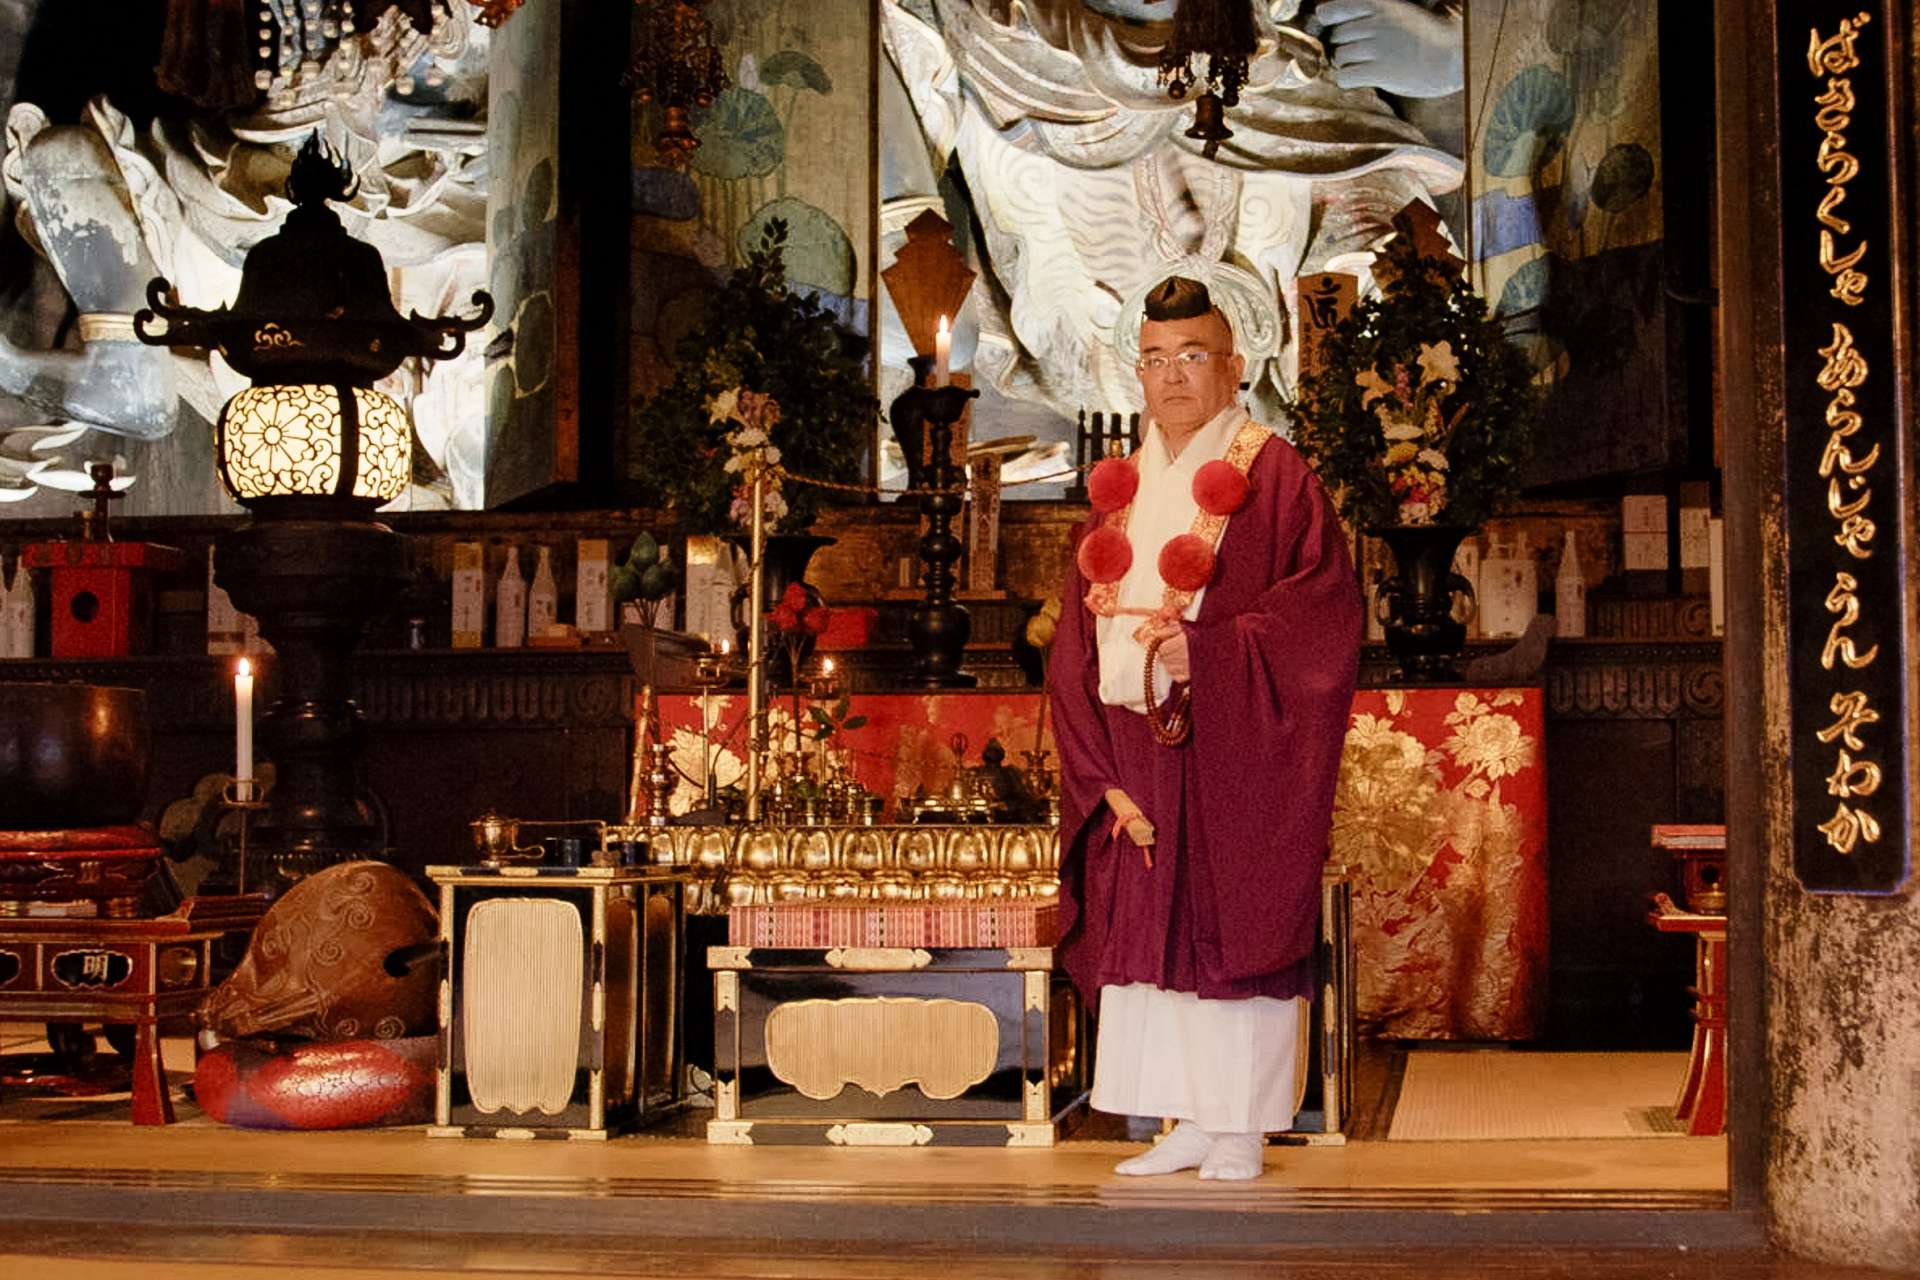 修験道の根本道場で祈りの心に触れる。日本人の精神的な原郷・奈良へ